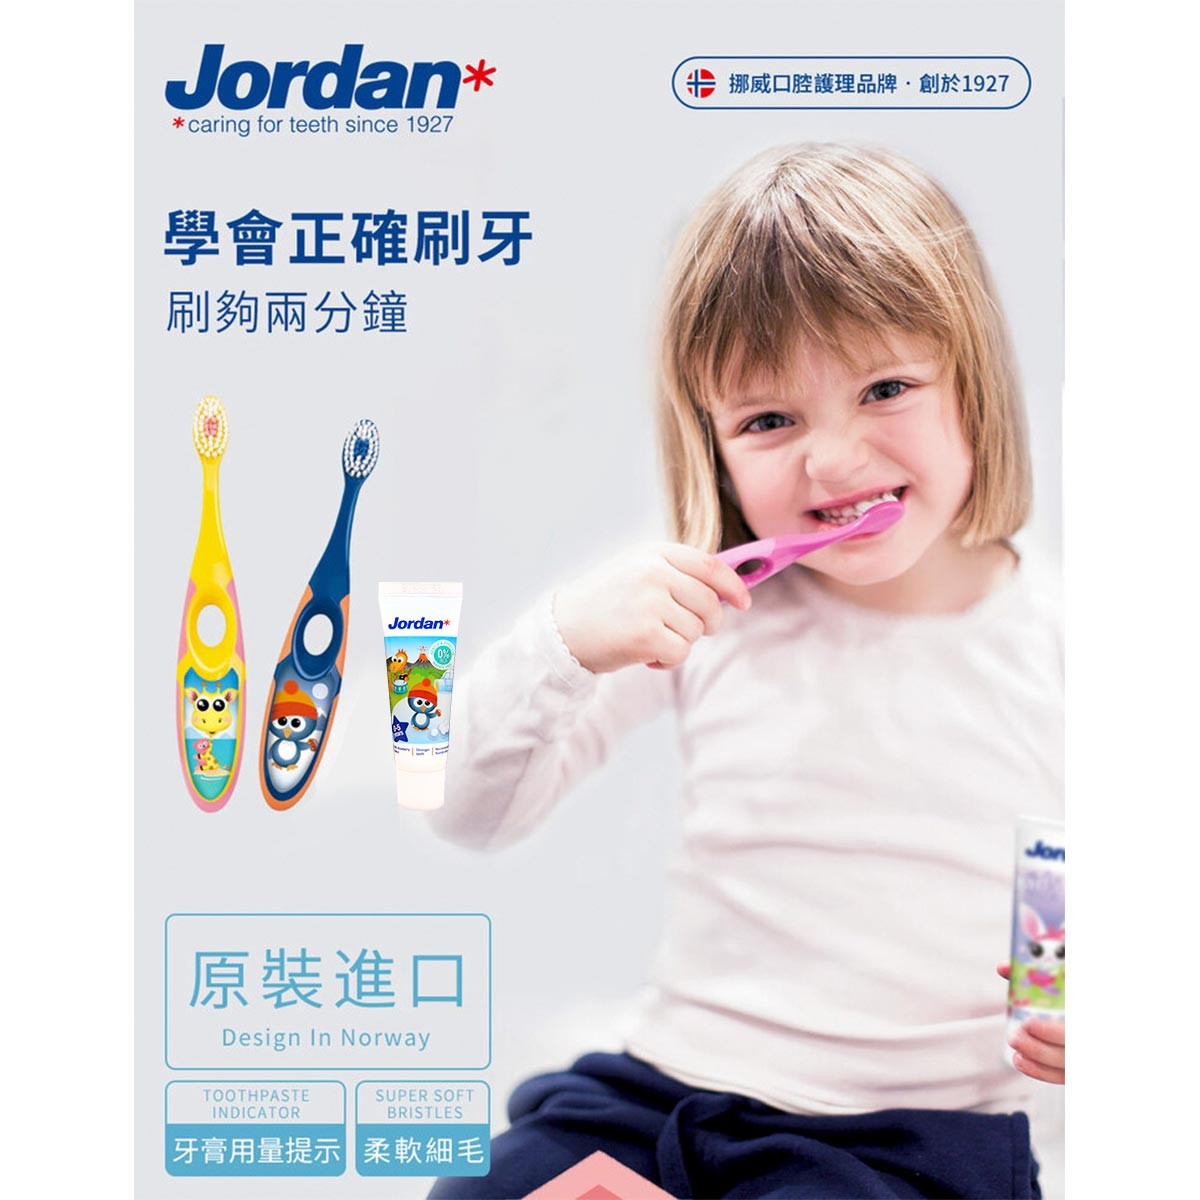 Jordan 兒童牙刷牙膏組，擁有雙密度敏感刷毛，清潔同時保護兒童幼嫩口腔，符合人體工學的握柄，幫助兒童正確學習刷牙習慣。